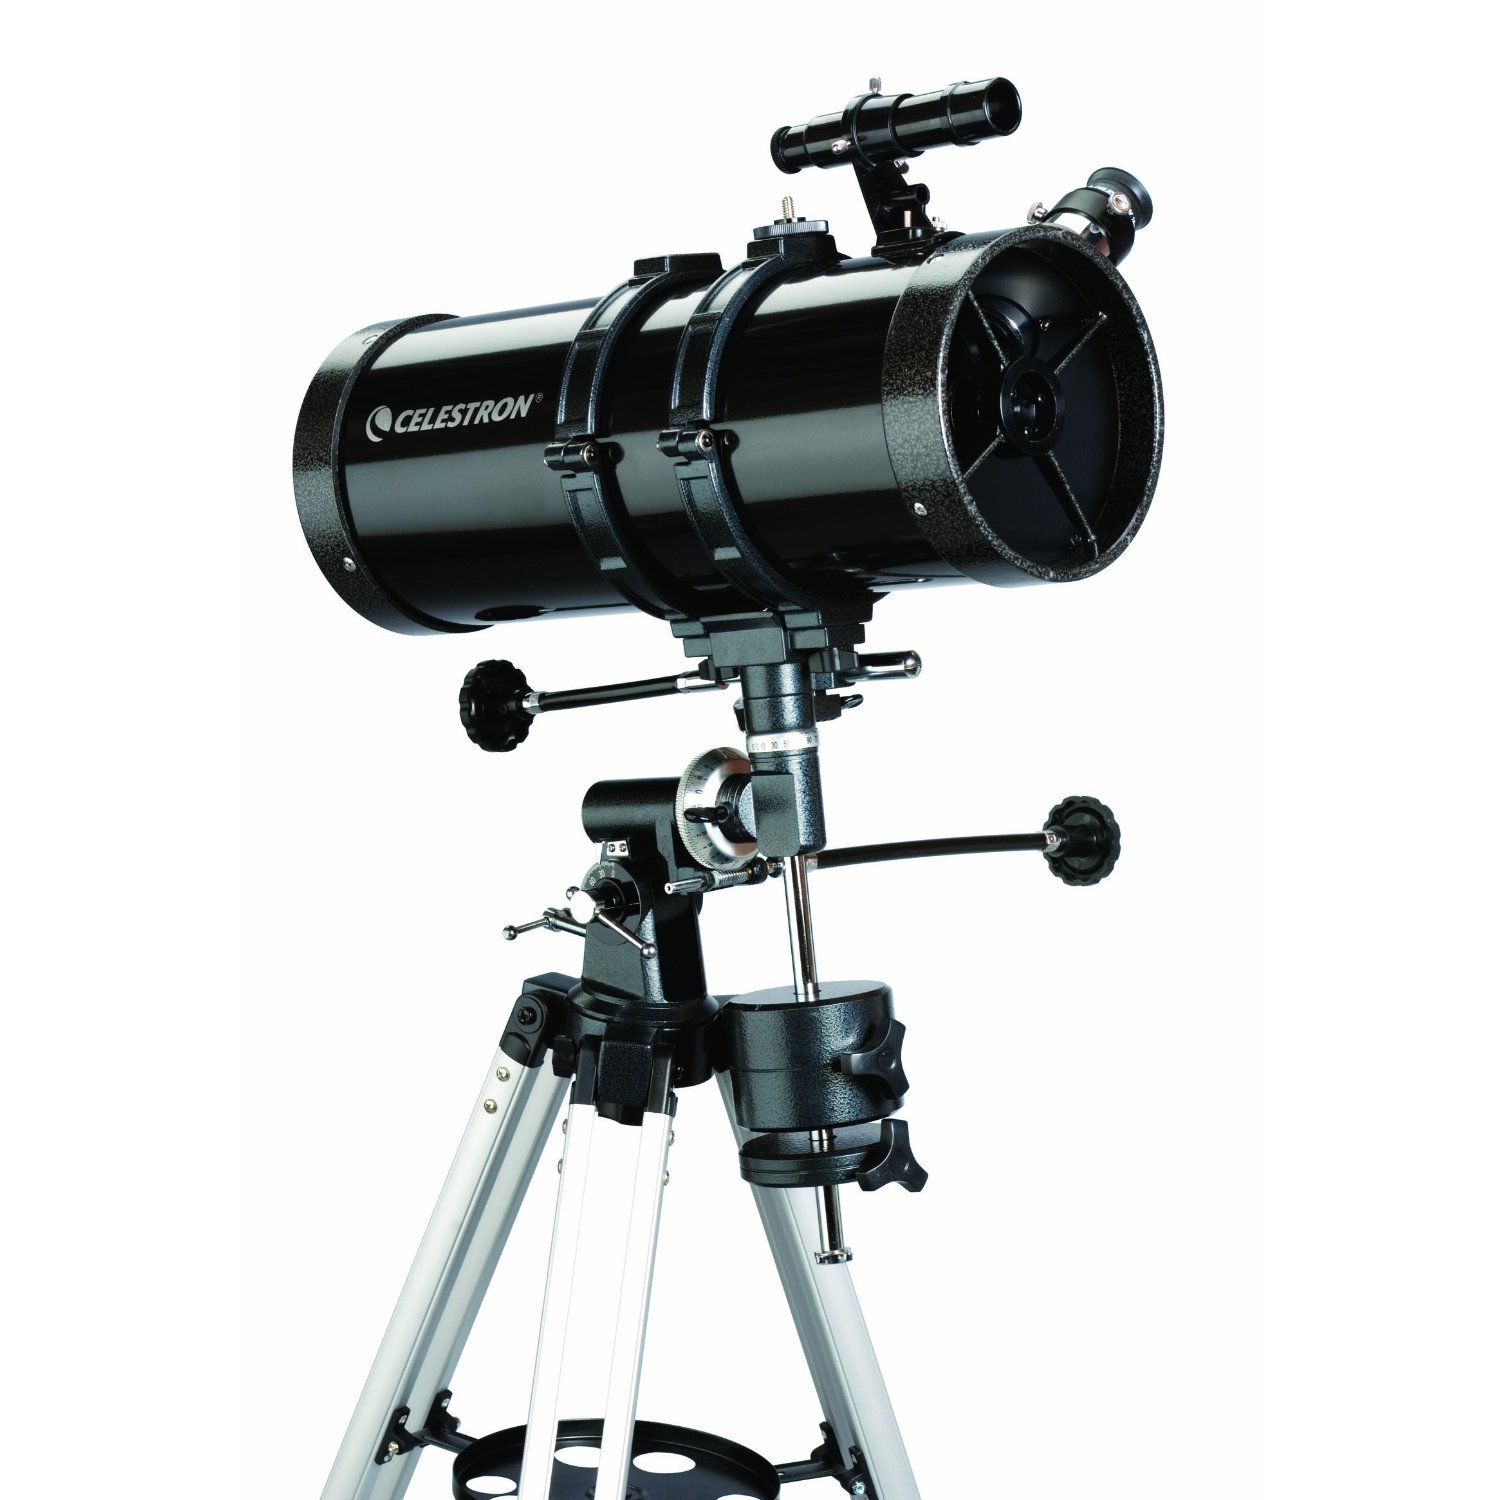 Celestron 127EQ PowerSeeker 望遠鏡  $99.95免運費